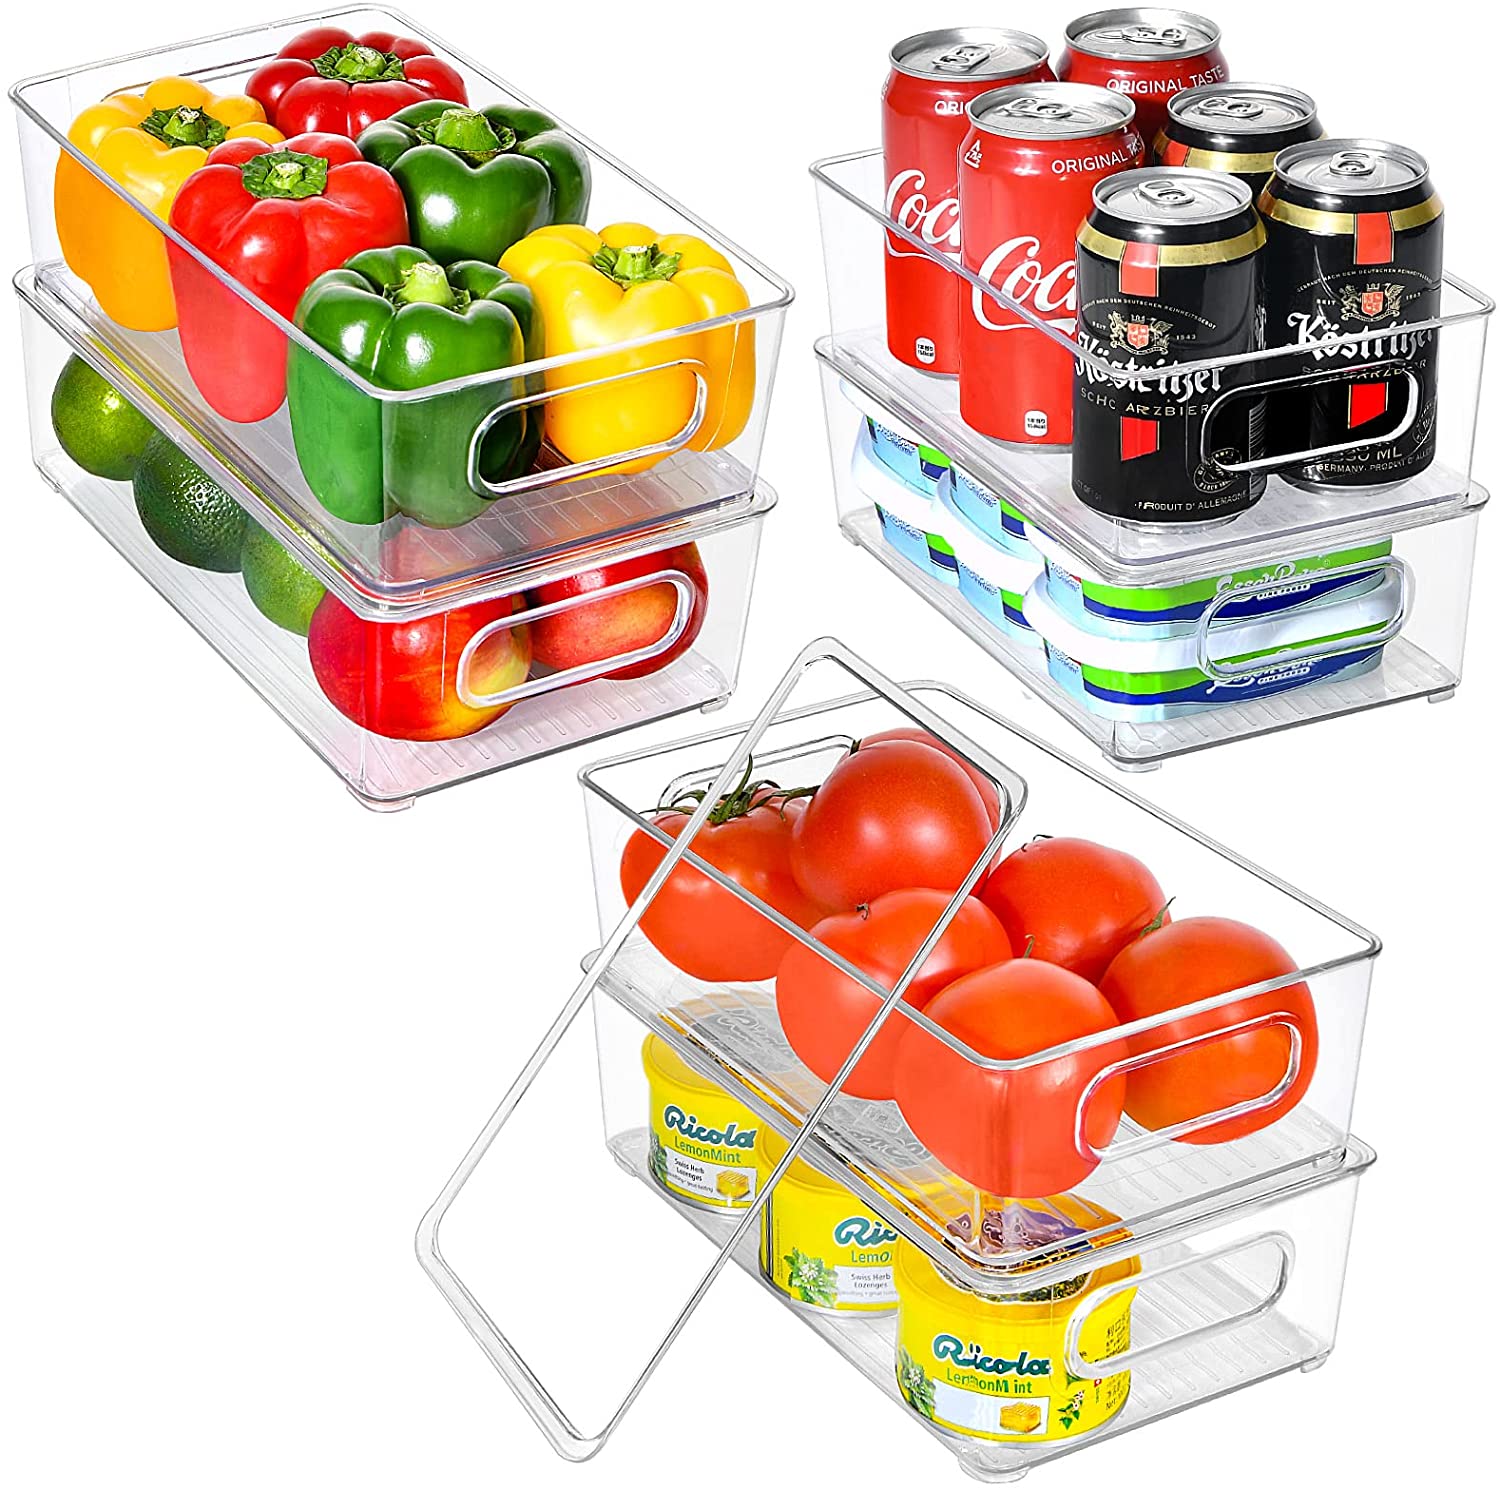 GoMaihe Organiseur de réfrigérateur 6 pièces – Organiseur de réfrigérateur transparent en plastique résistant sans BPA – Organiseur de réfrigérateur empilable avec couvercle et tiroirs